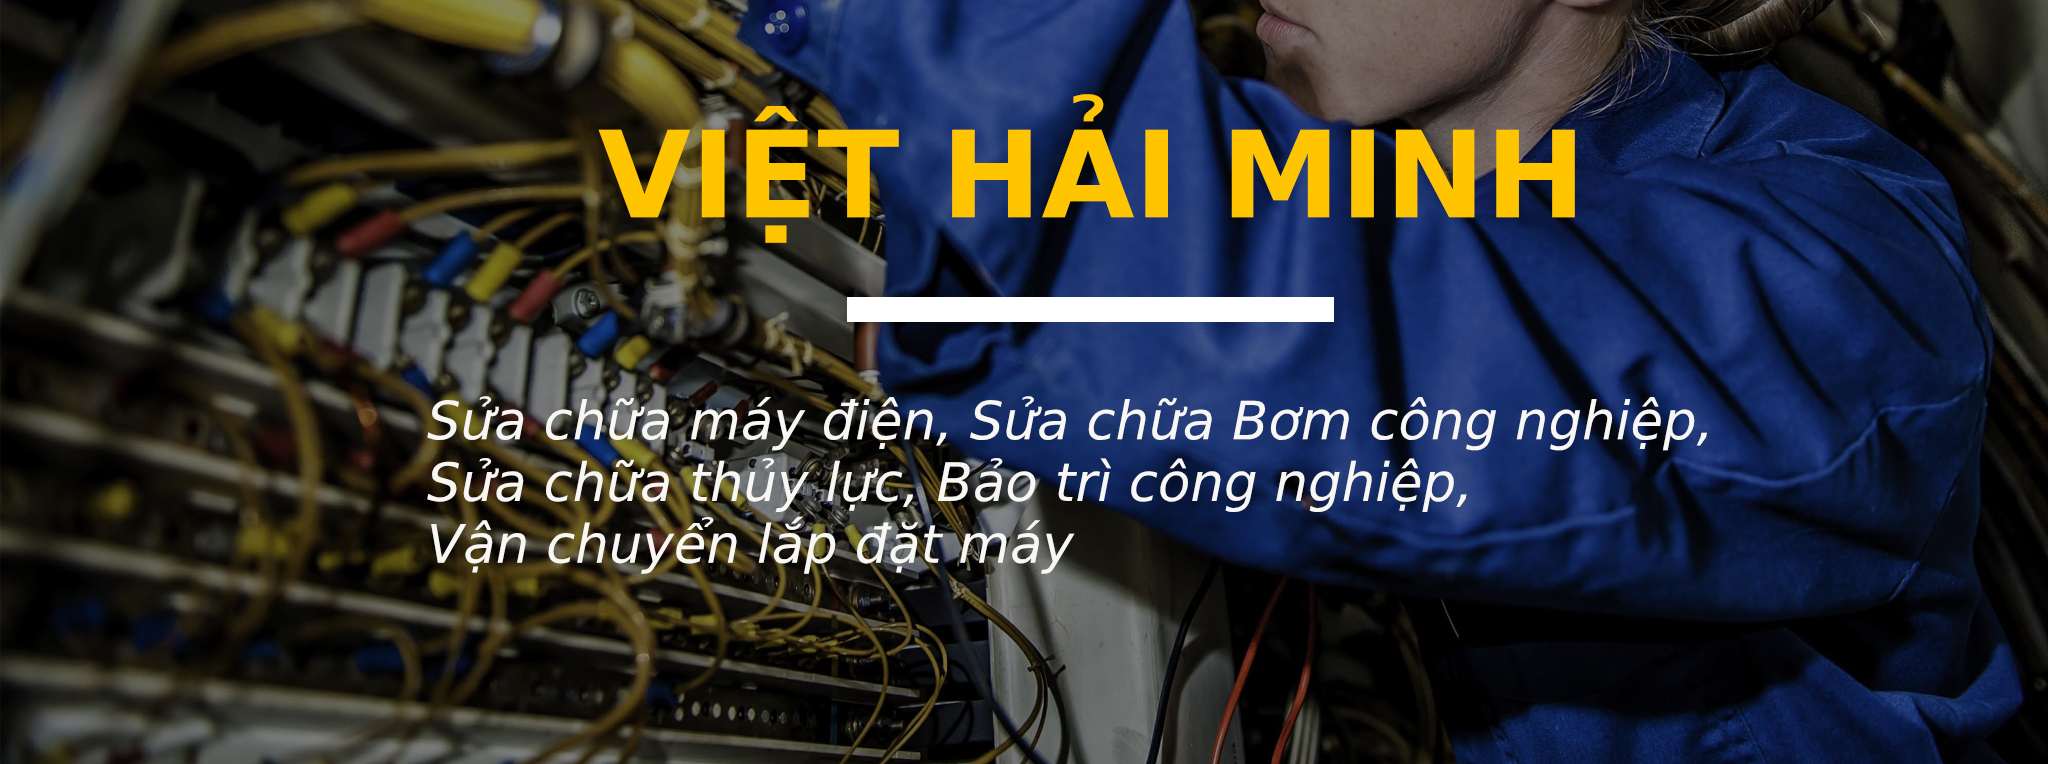 Công ty Việt Hải Minh